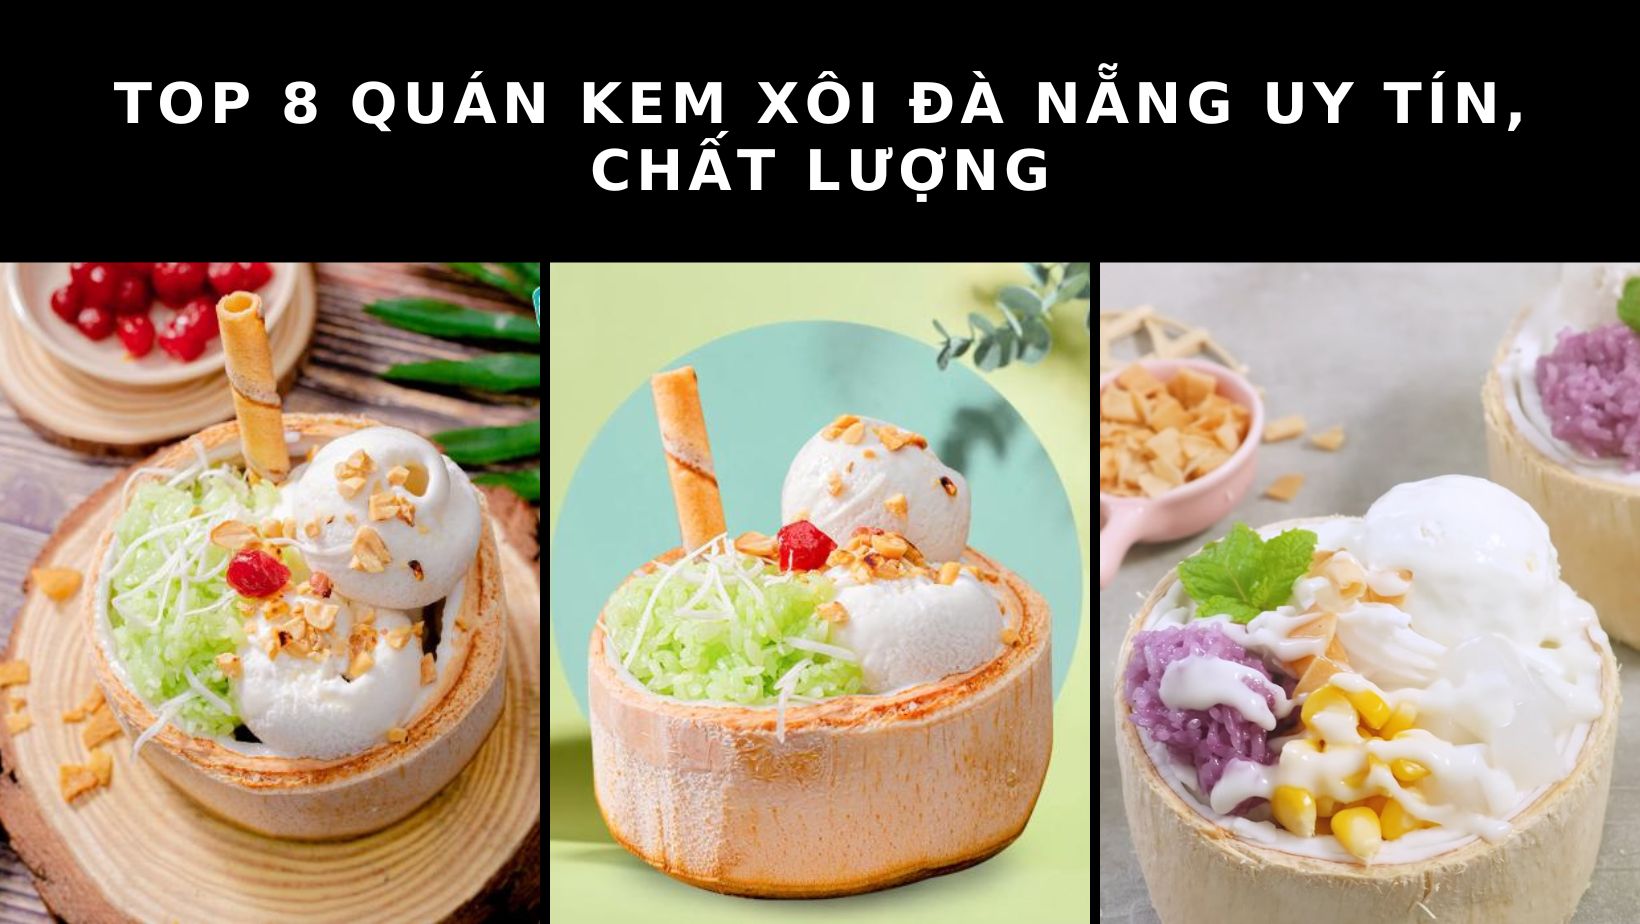 Top 8 quán kem xôi Đà Nẵng được đông đảo người yêu thích